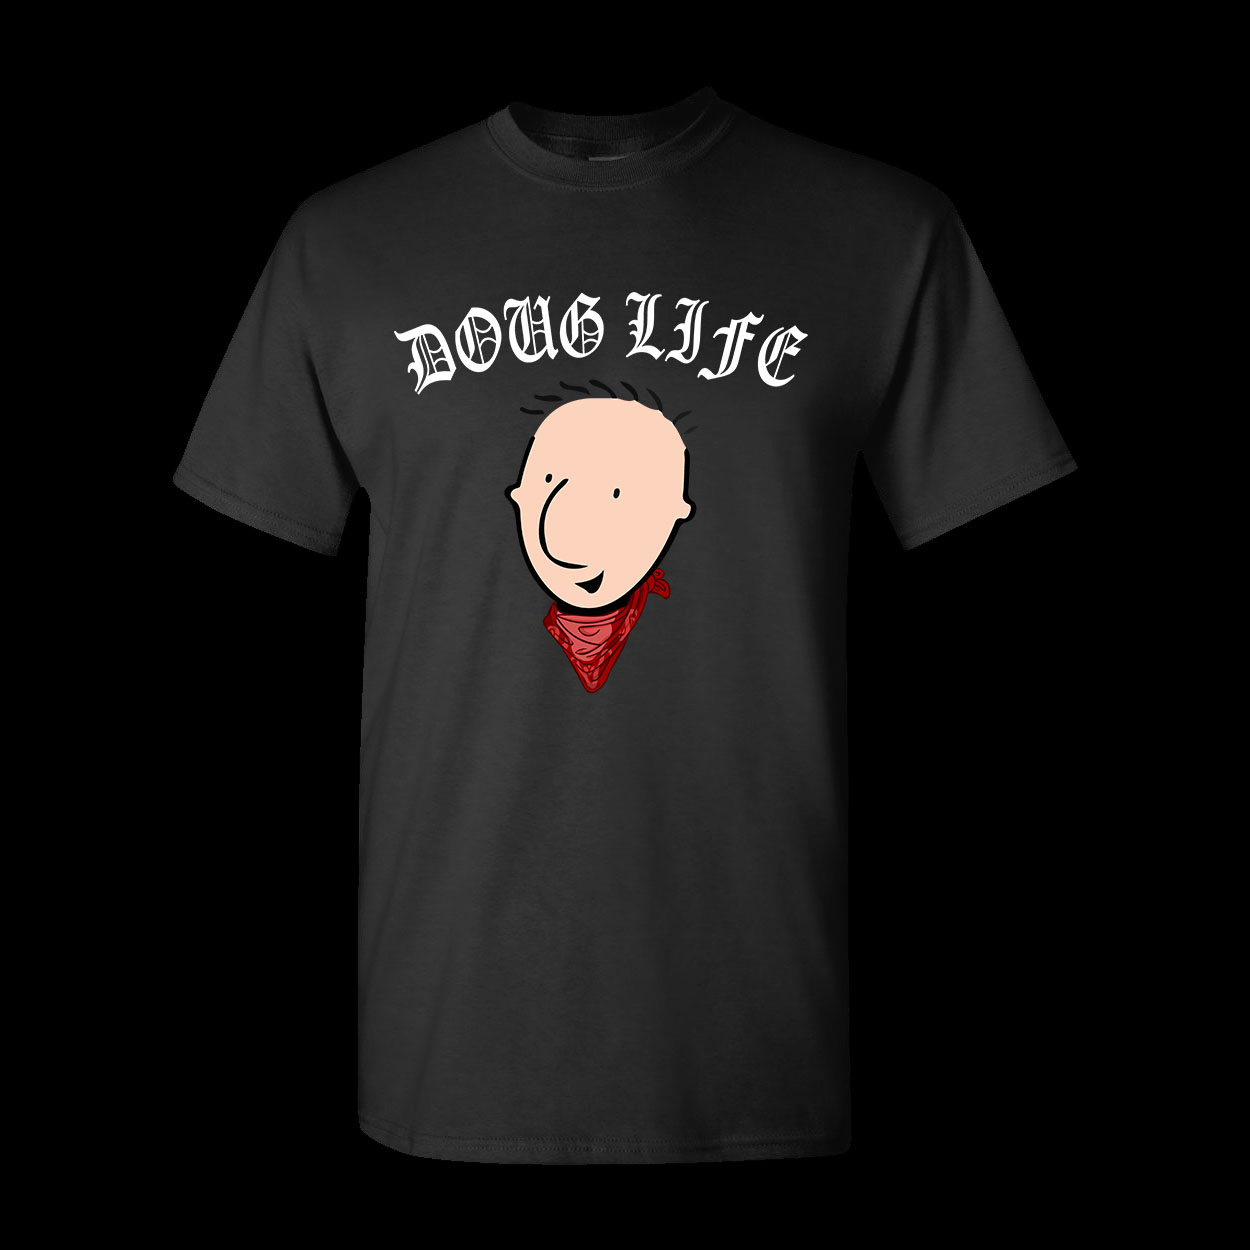 Accidie Doug Life T-shirt Black